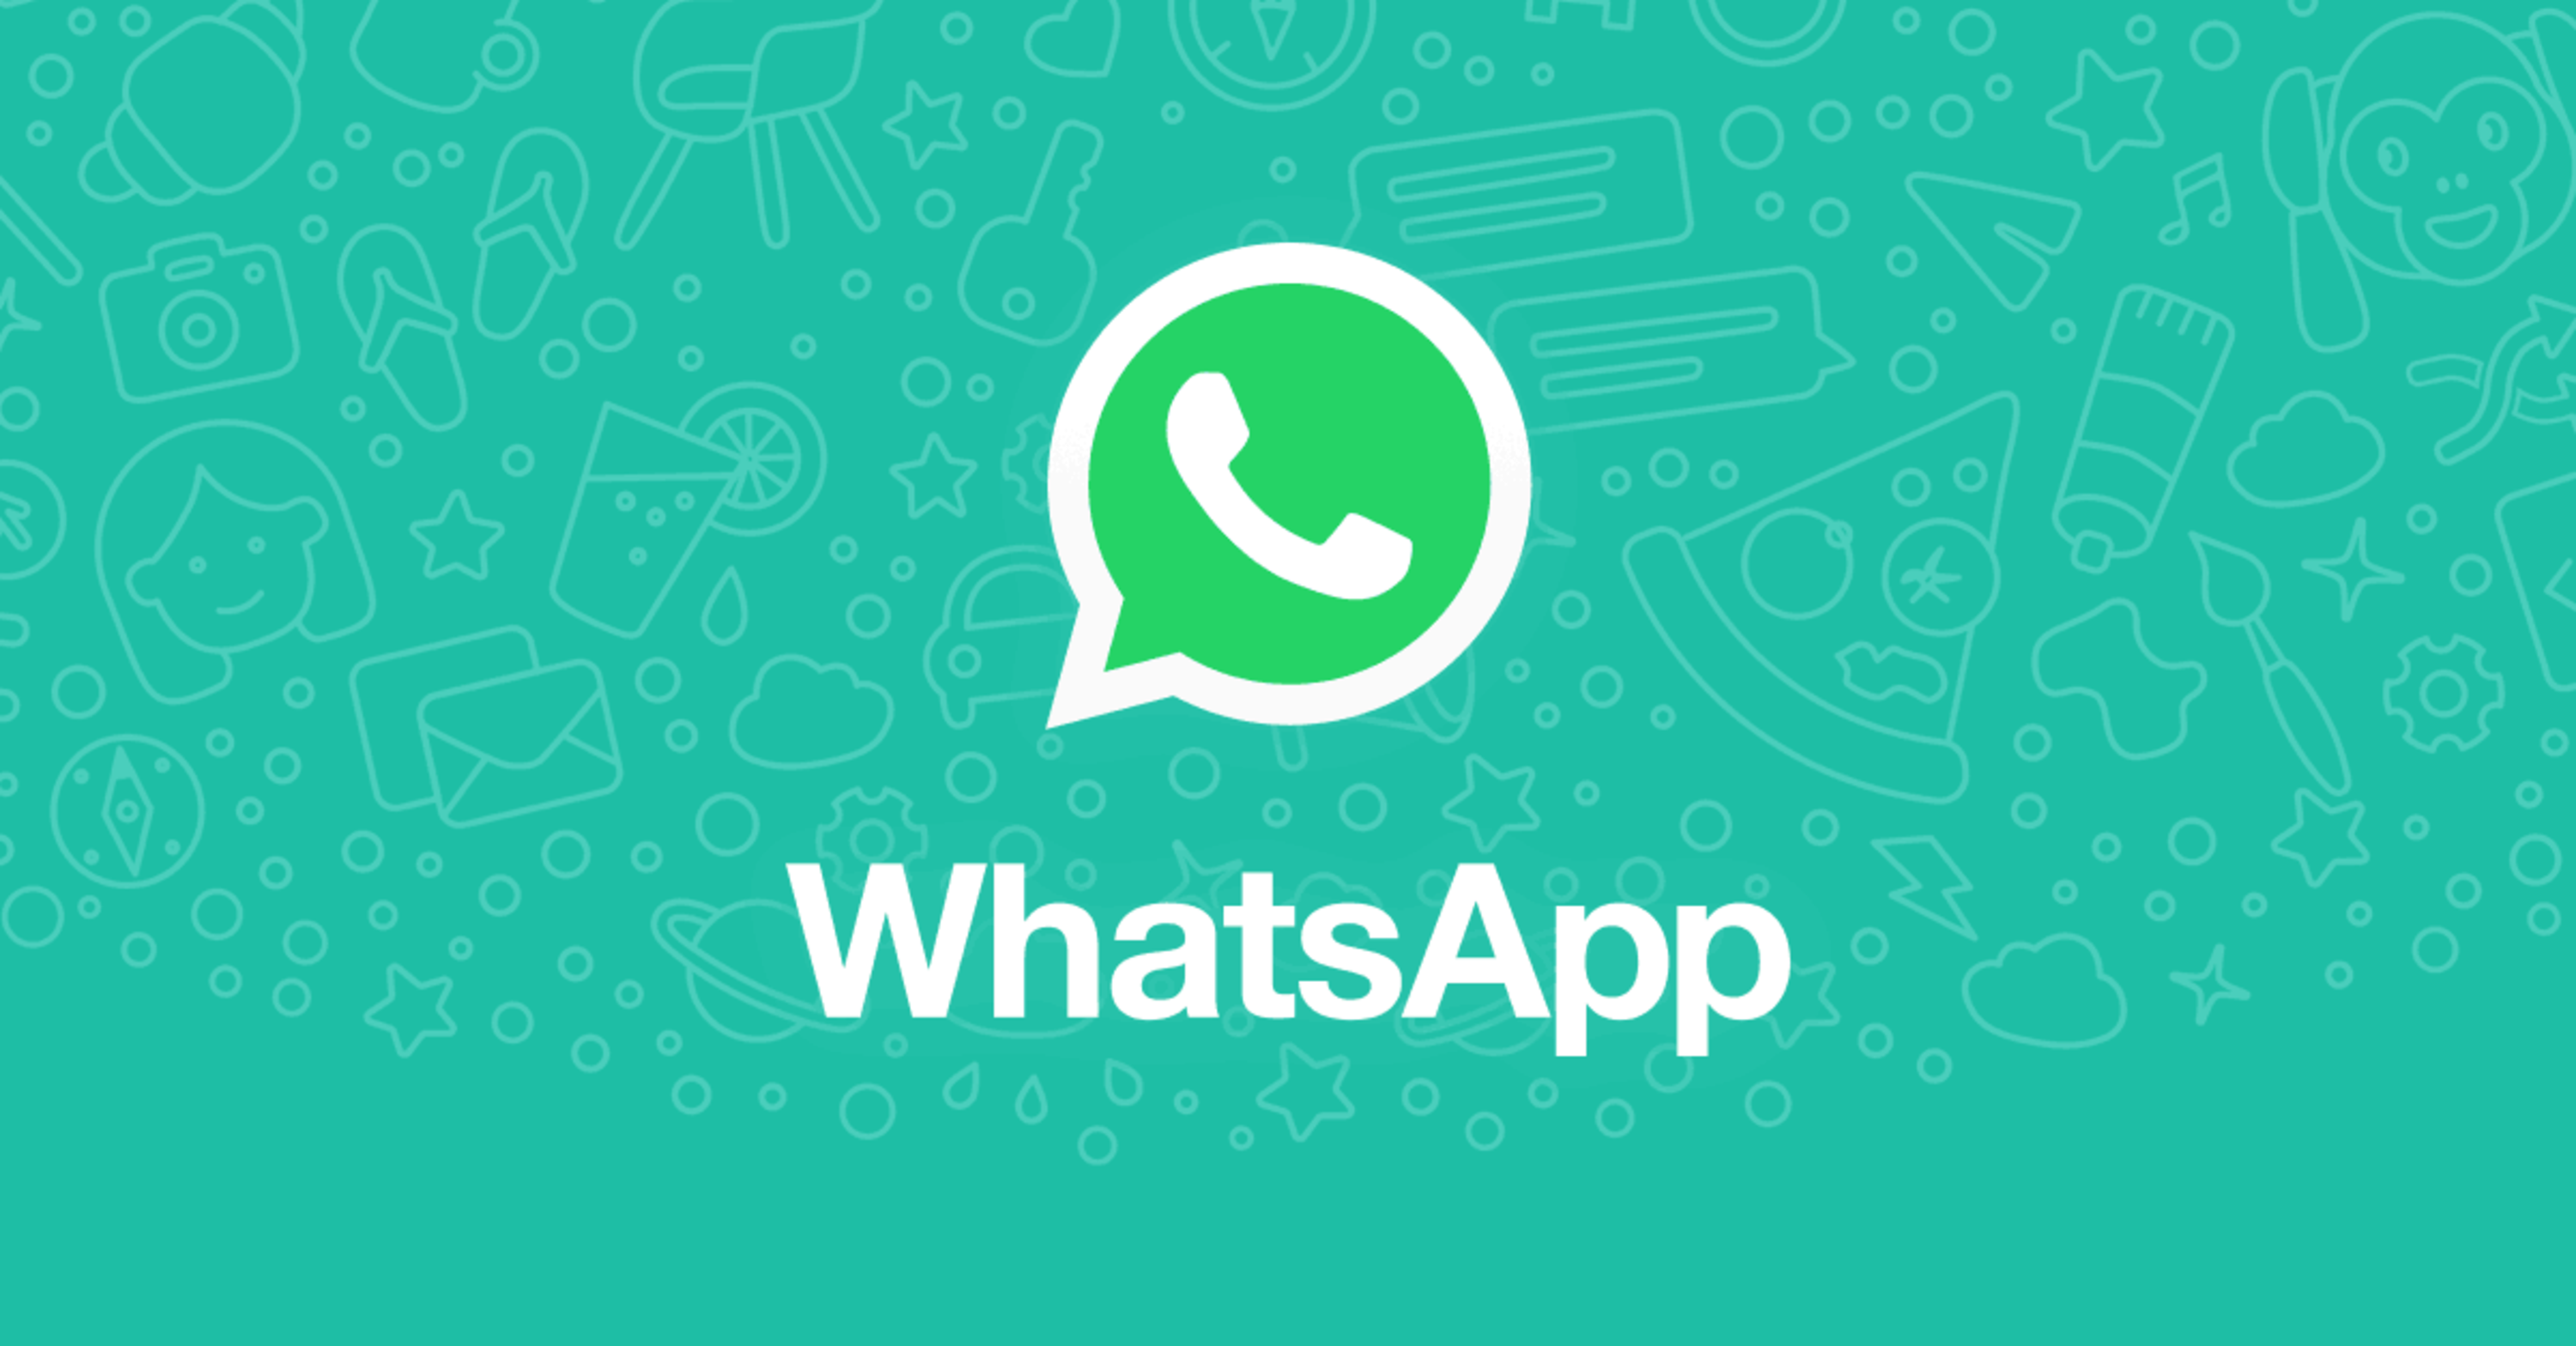 Distrazioni alla guida, WhatsApp: basta inserimento libero nei gruppi